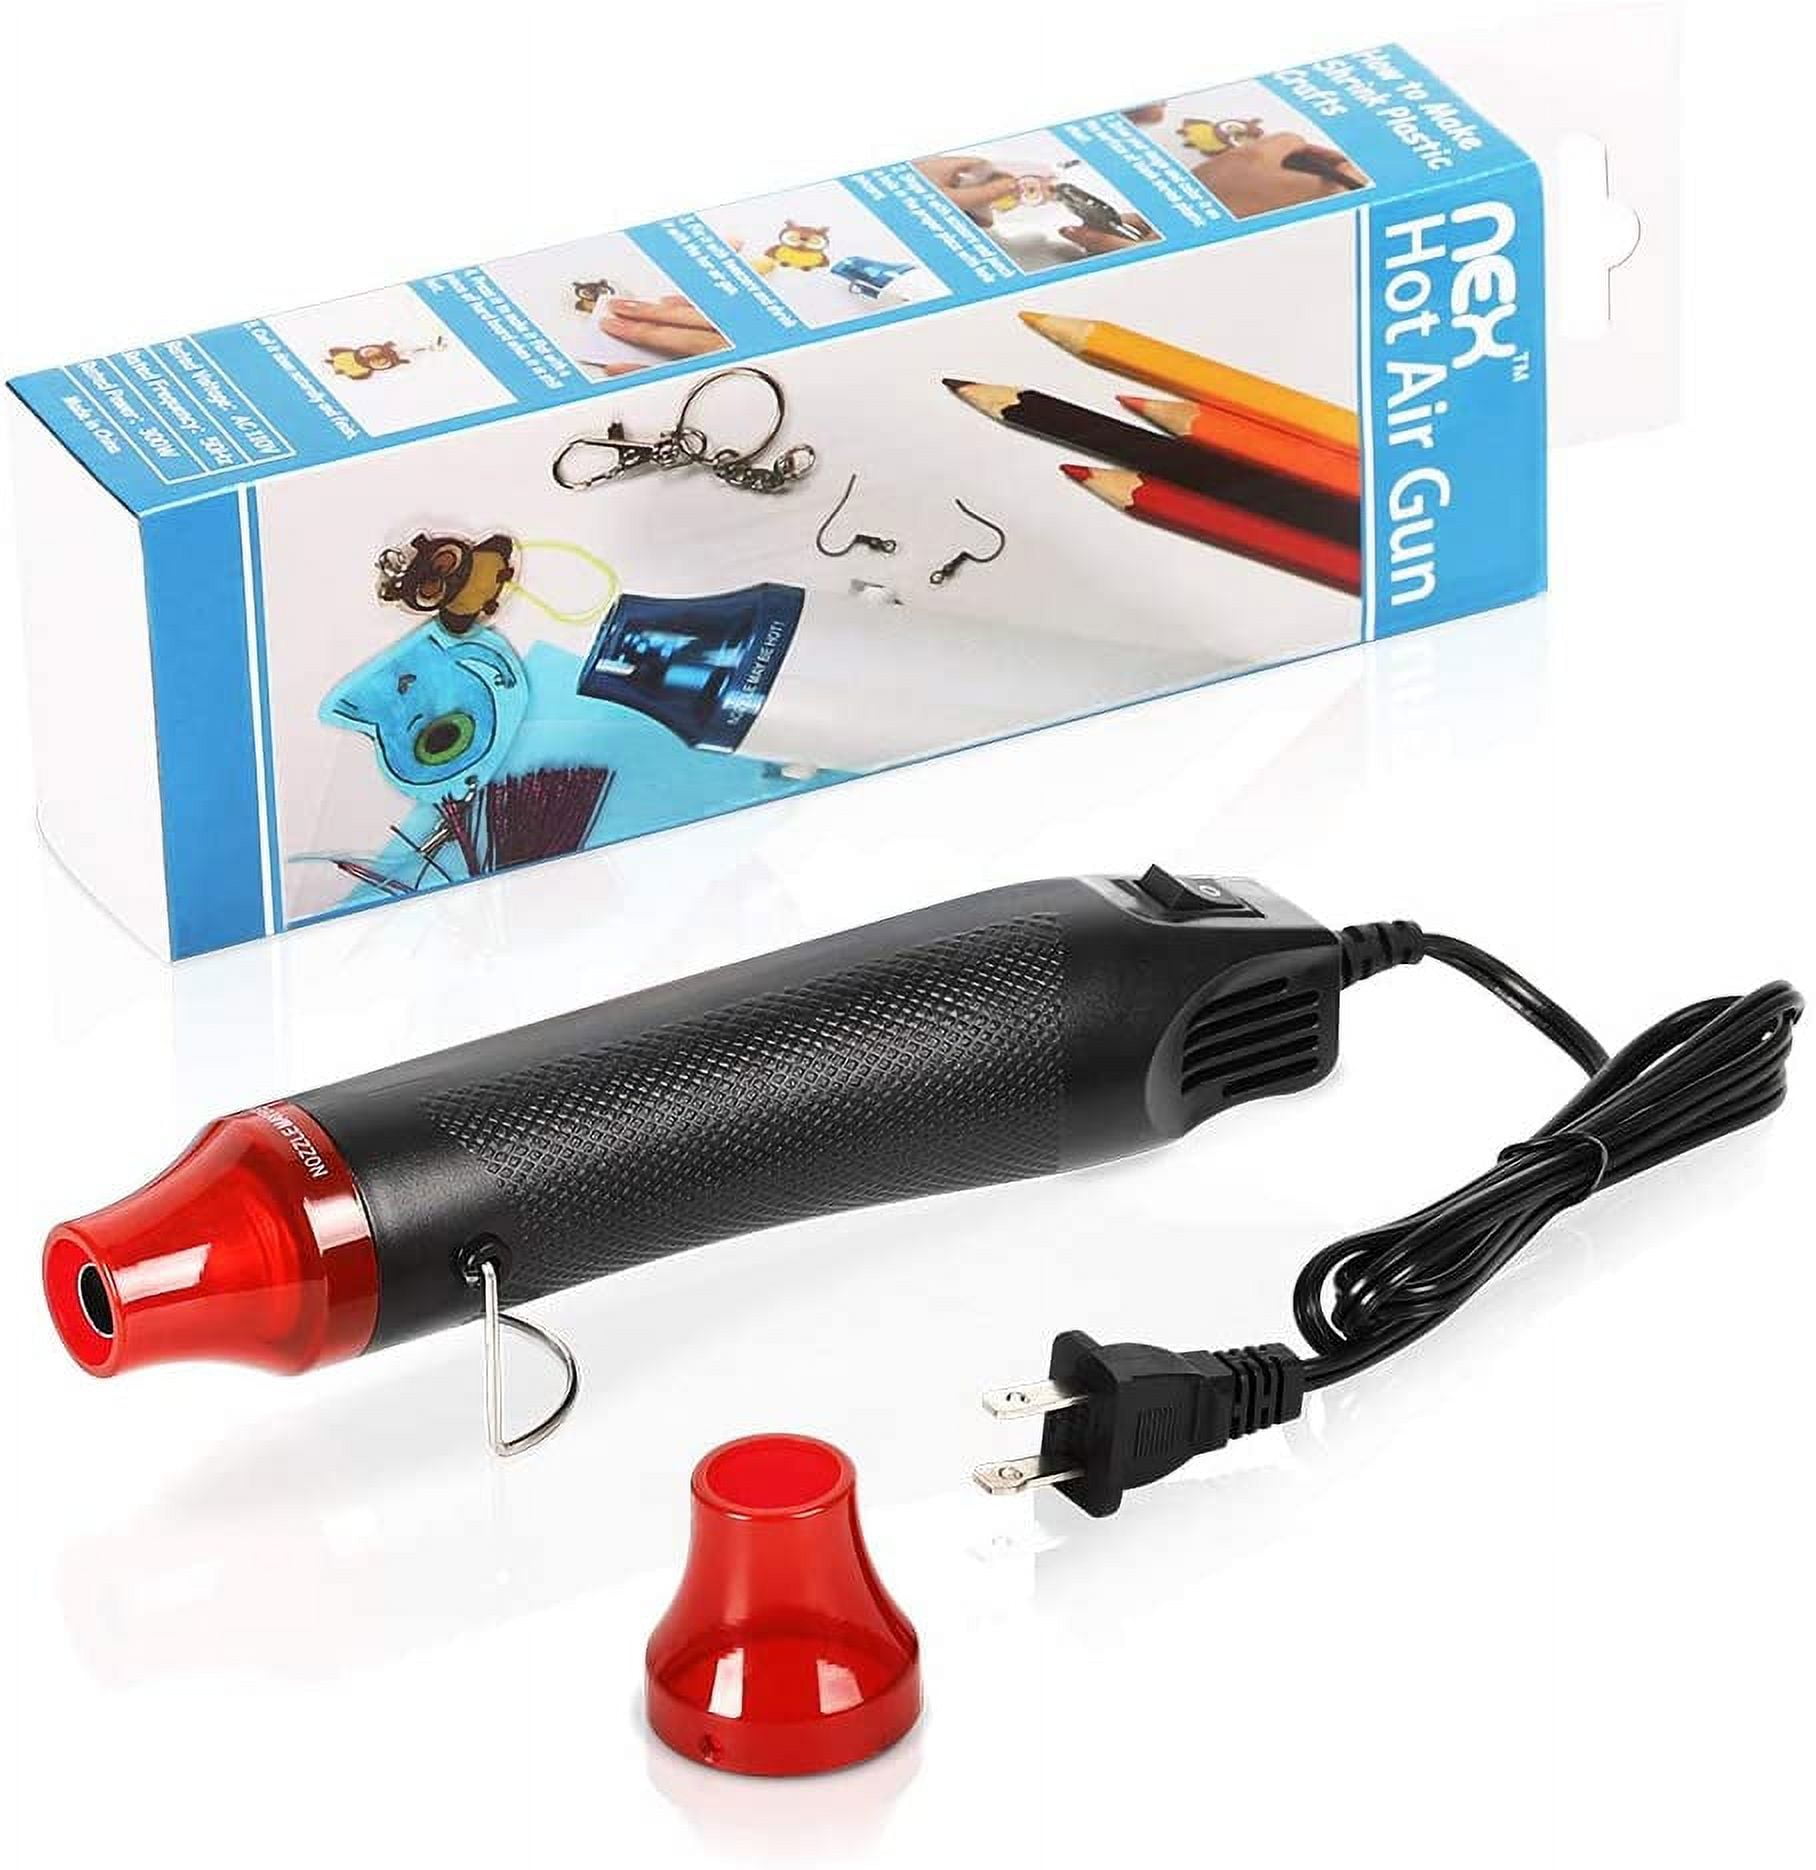 mofa emboss Heat PenMini Heat GunHot Air Pen Tools Shrink Pen with